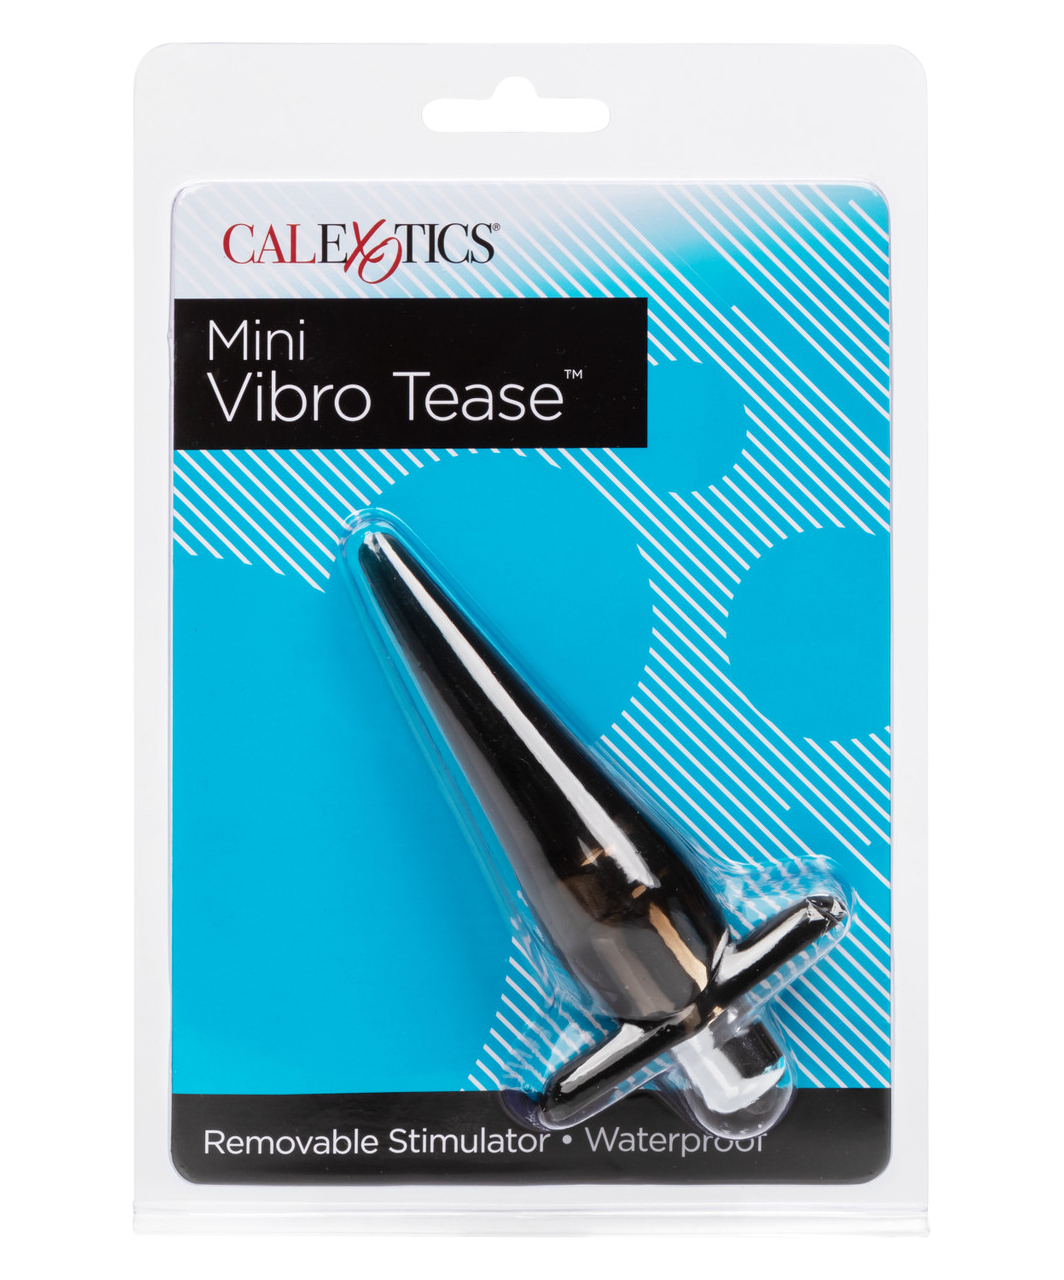 CalExotics Vibro Tease anālais minivibrators